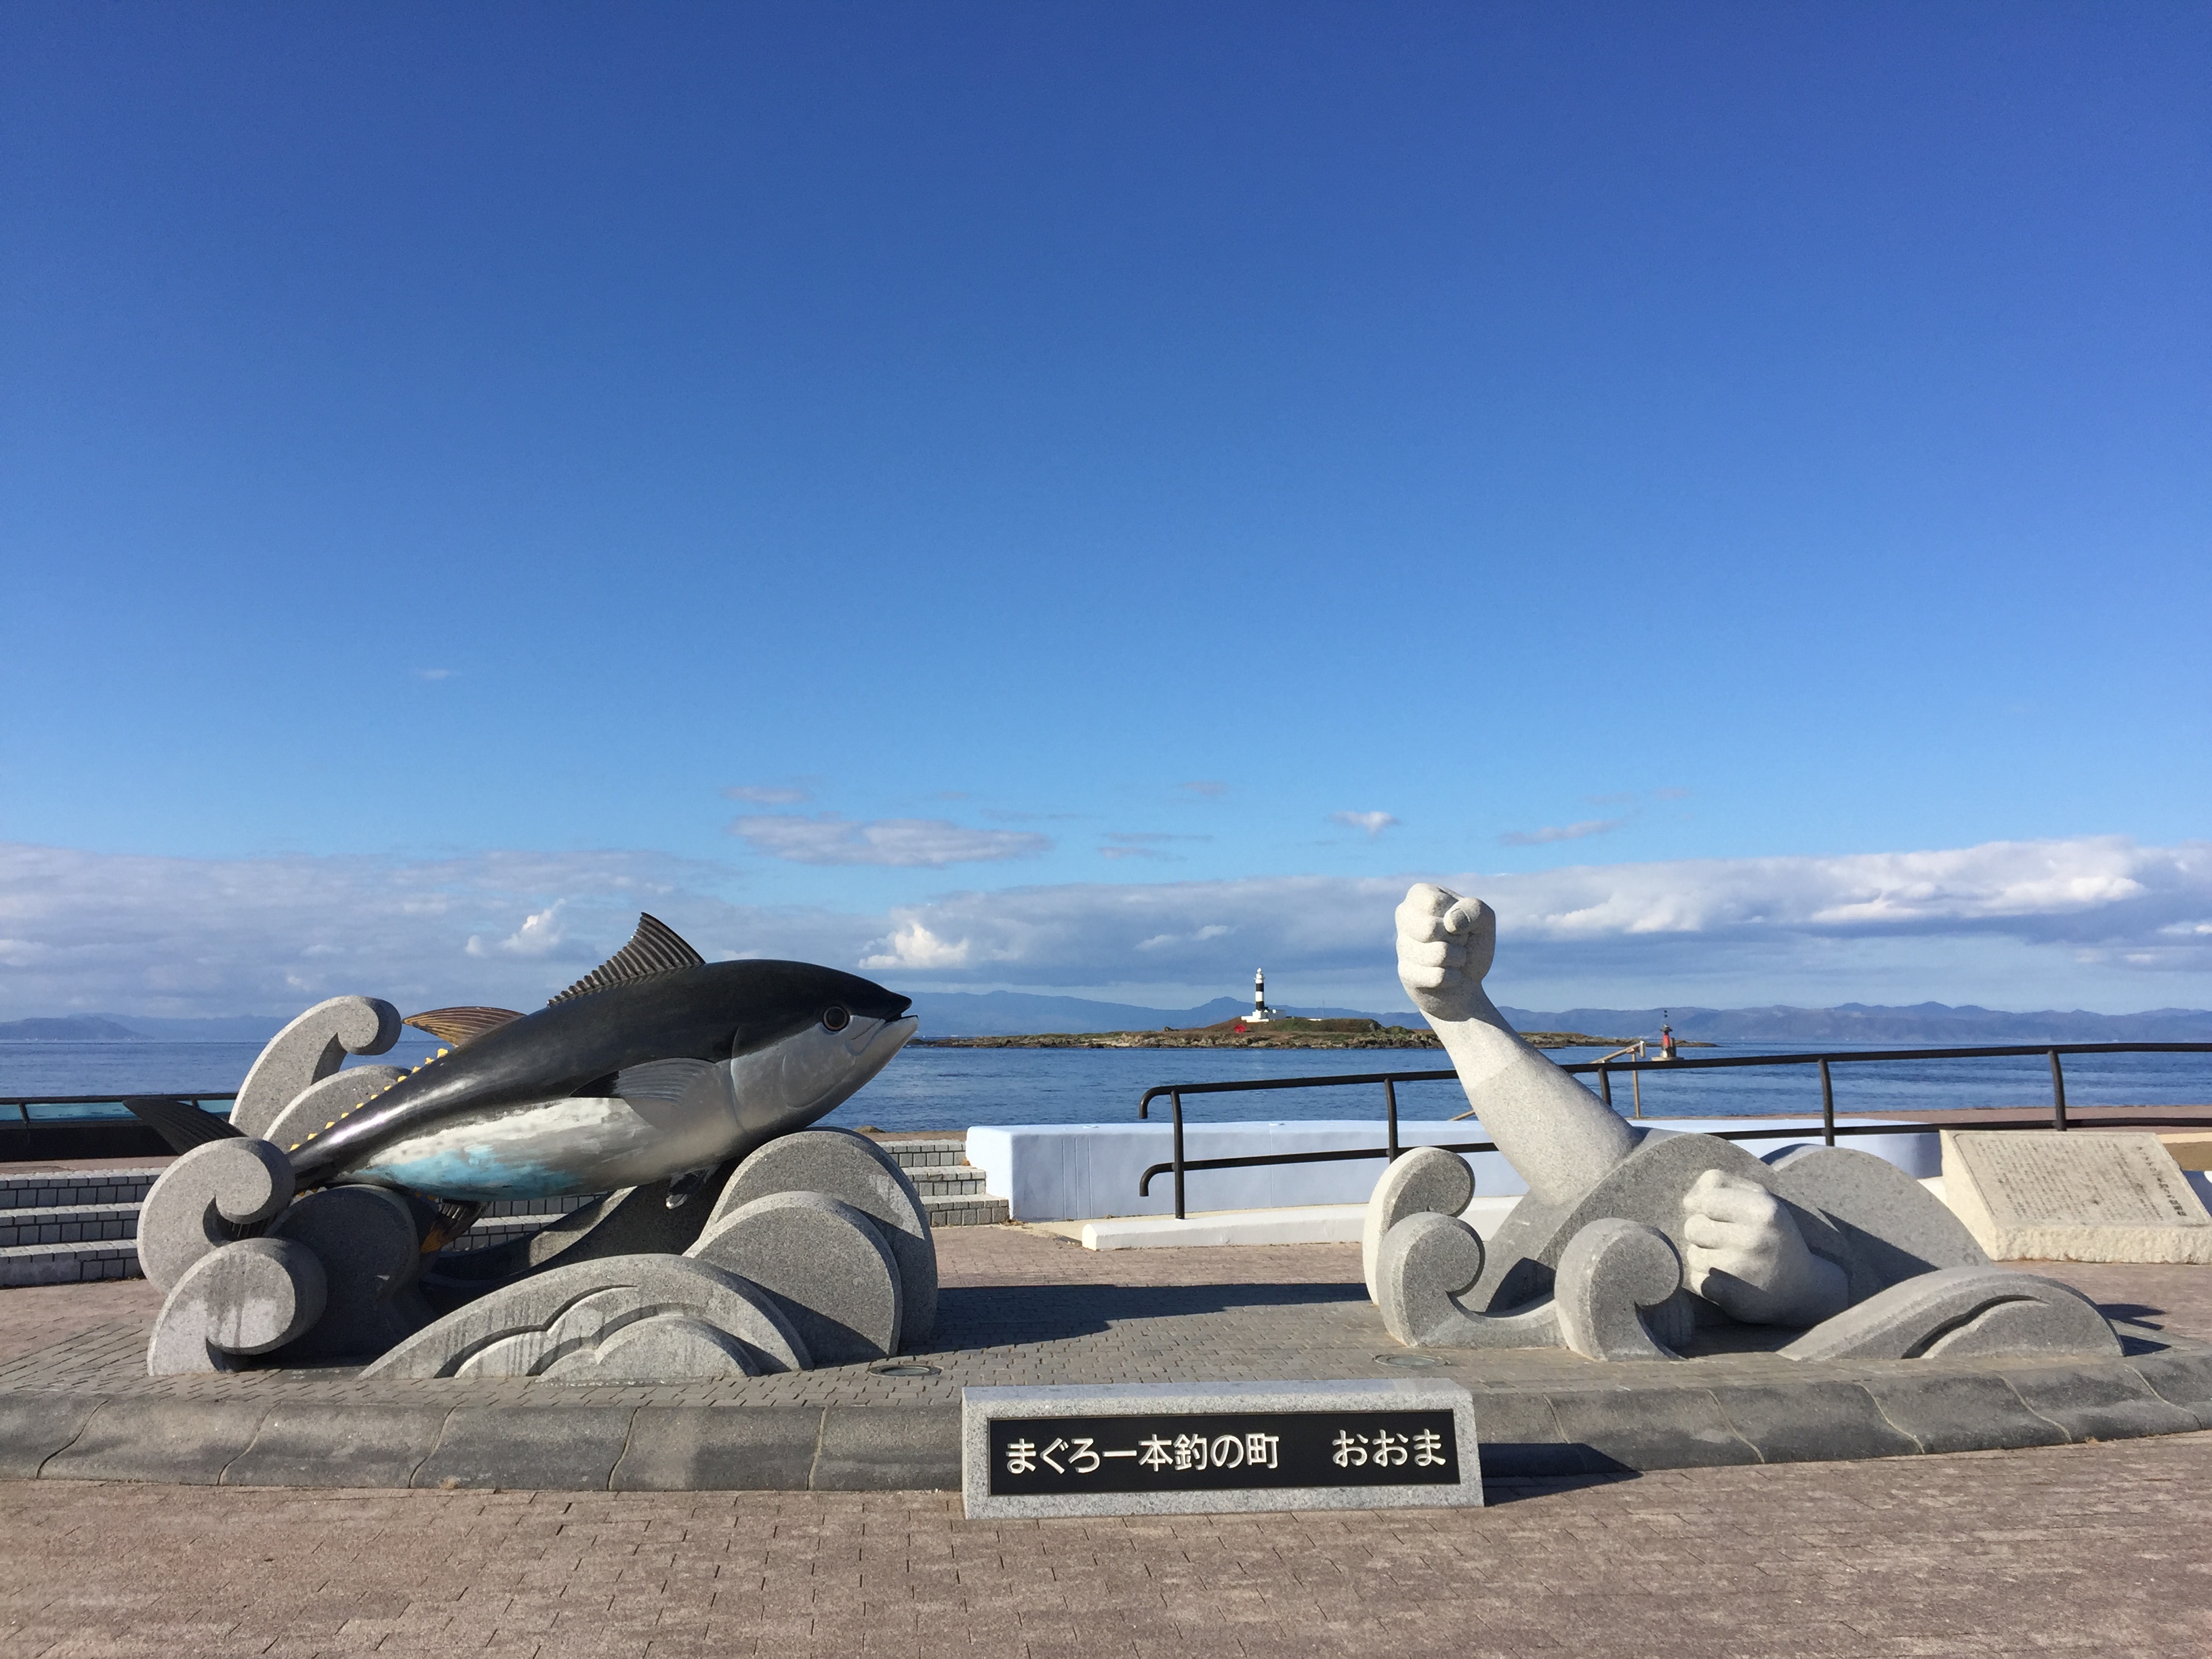 일본 도호쿠지방 여행 중 참치잡이로 유명한 오오마자키(大間崎)에서. 일본 혼슈 섬 북쪽 땅끝마을이라 등대 너머로 홋카이도가 보인다.